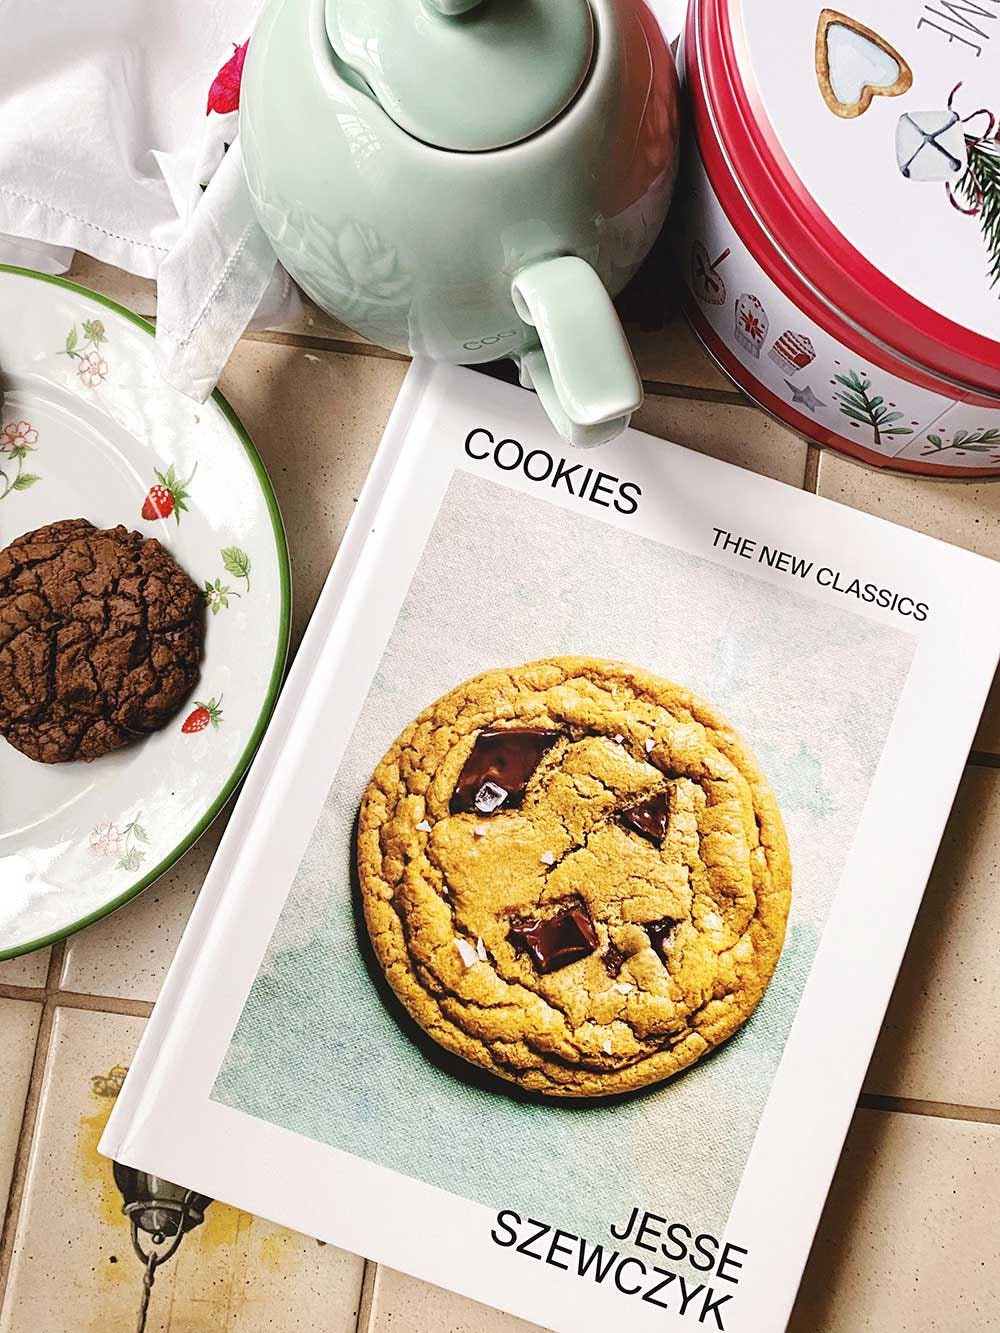 Cookies, the new classics by Jesse Szewczyk